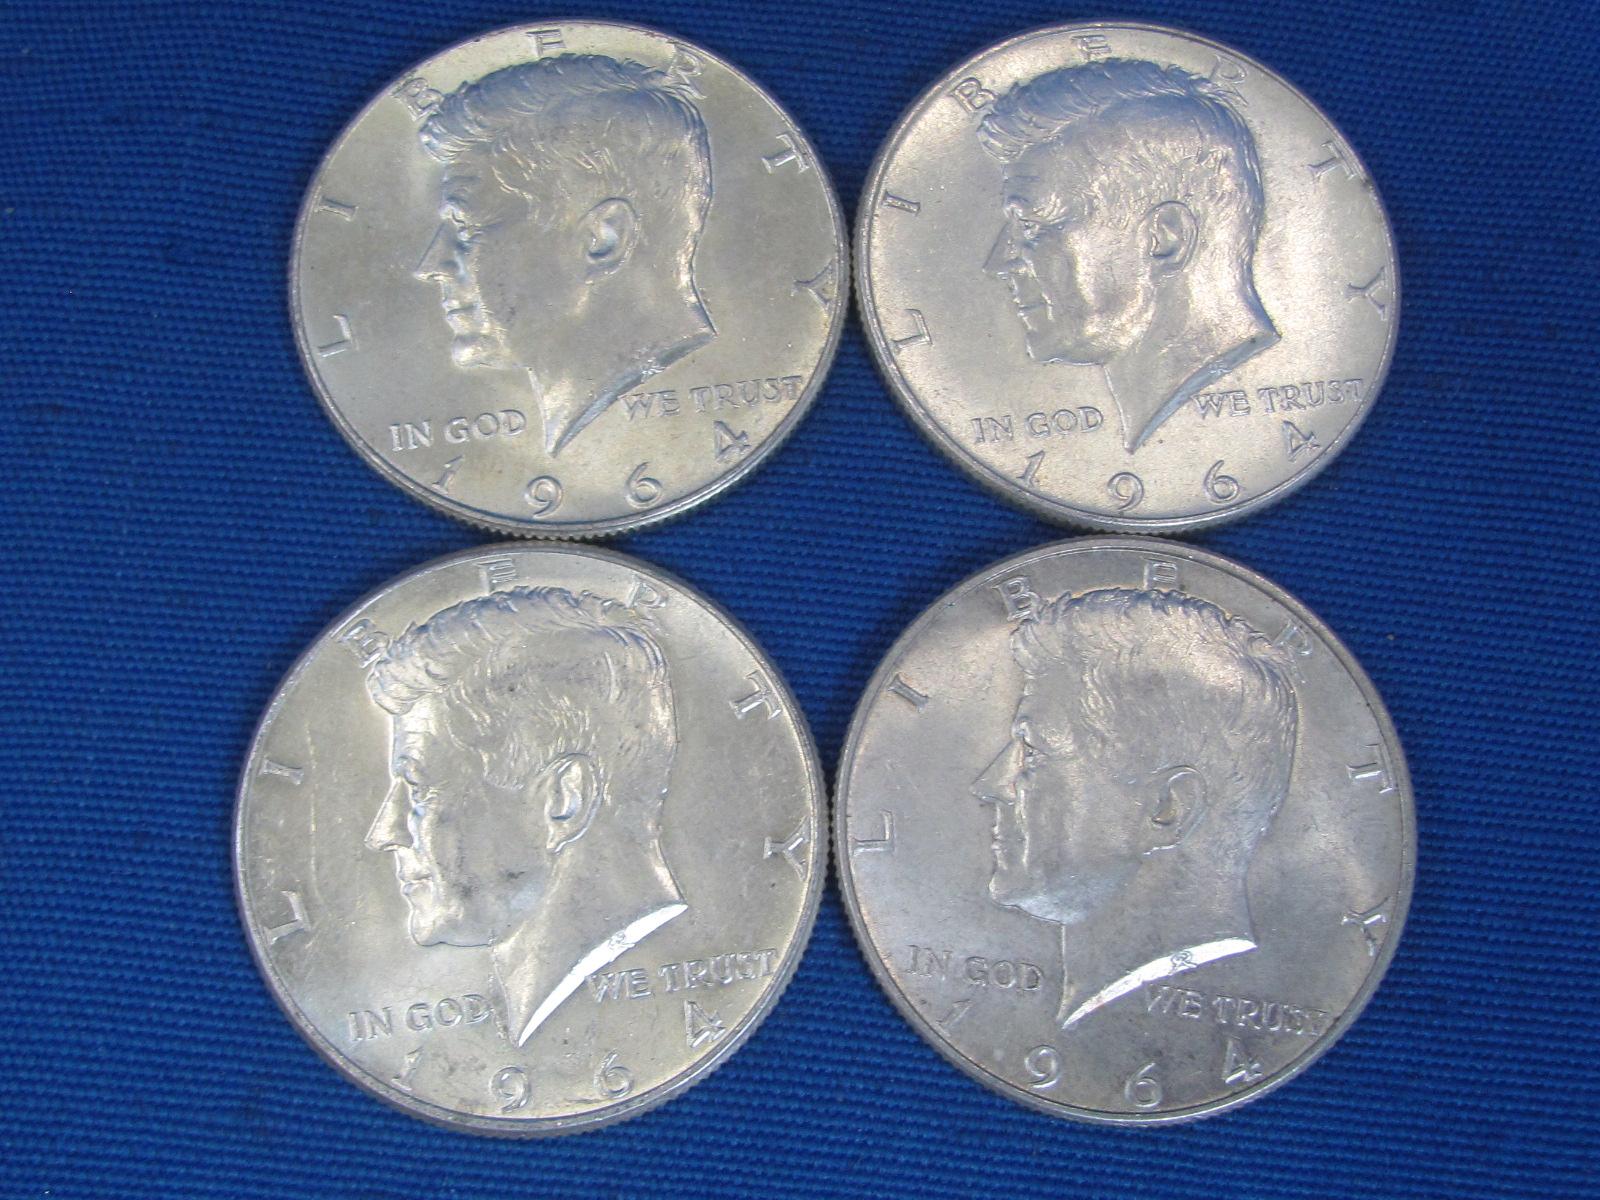 4 1964 Kennedy Half Dollars